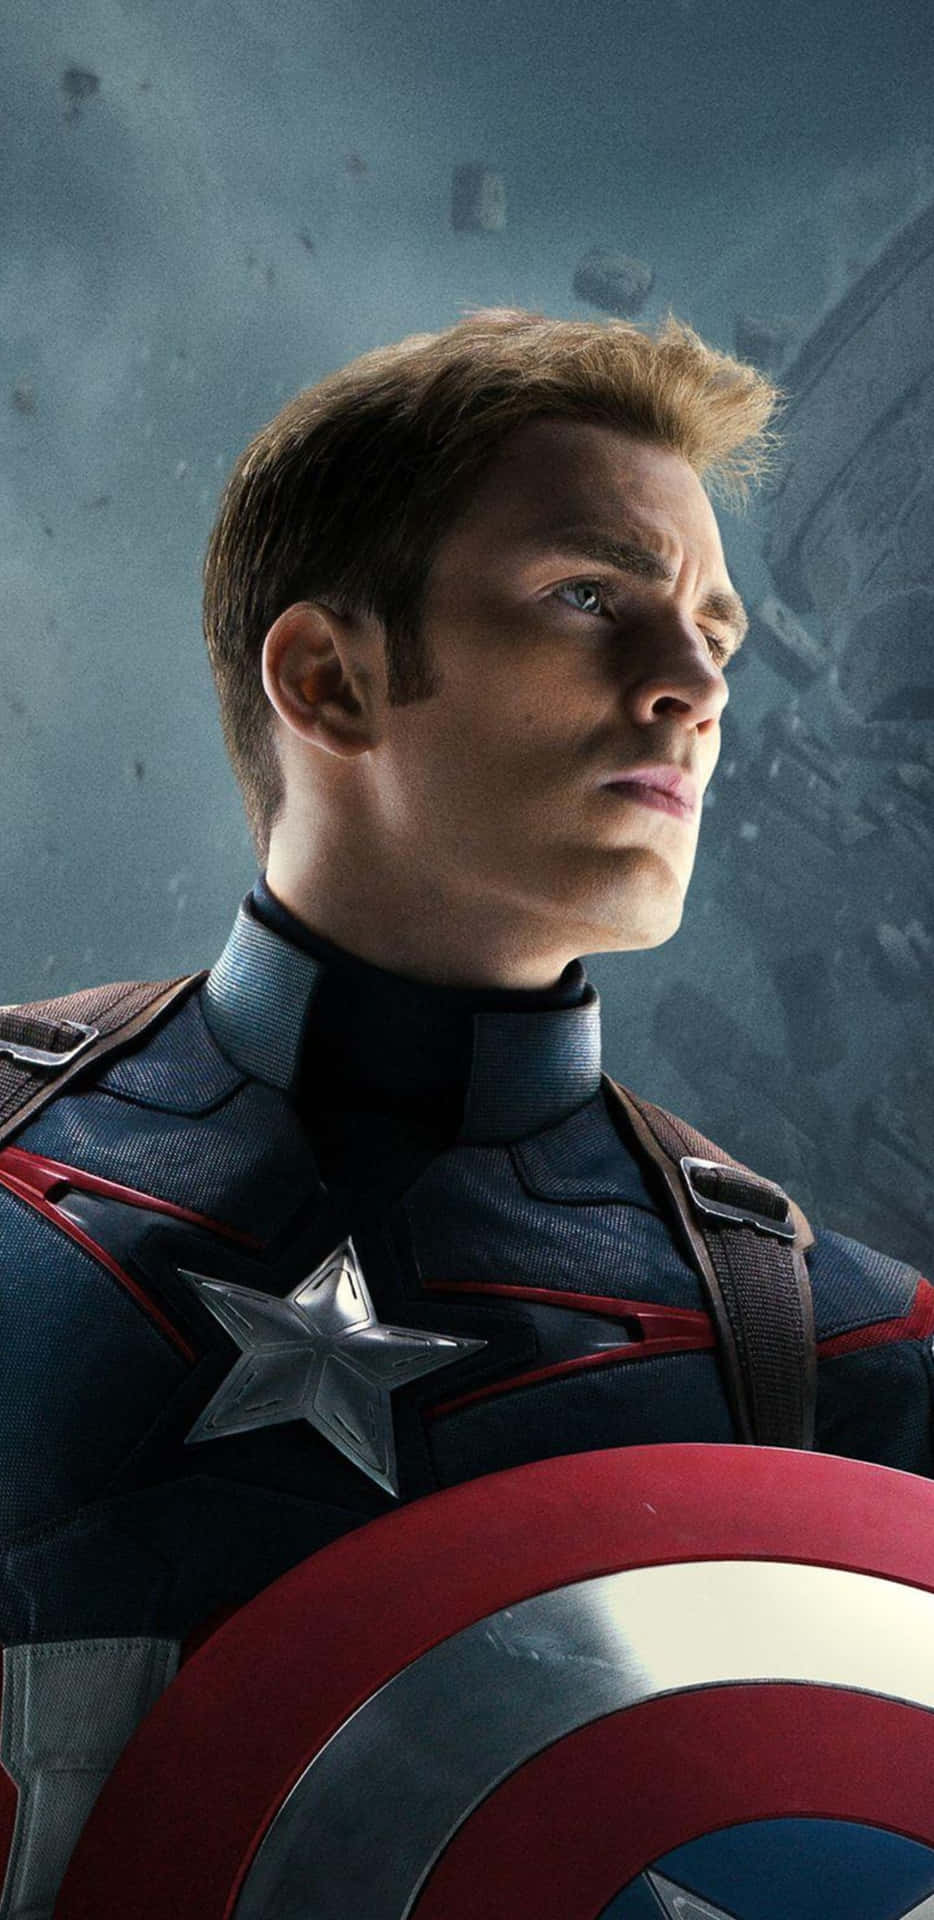 Fondode Pantalla De Capitán América Del Pixel 3xl De Avengers: Era De Ultrón.